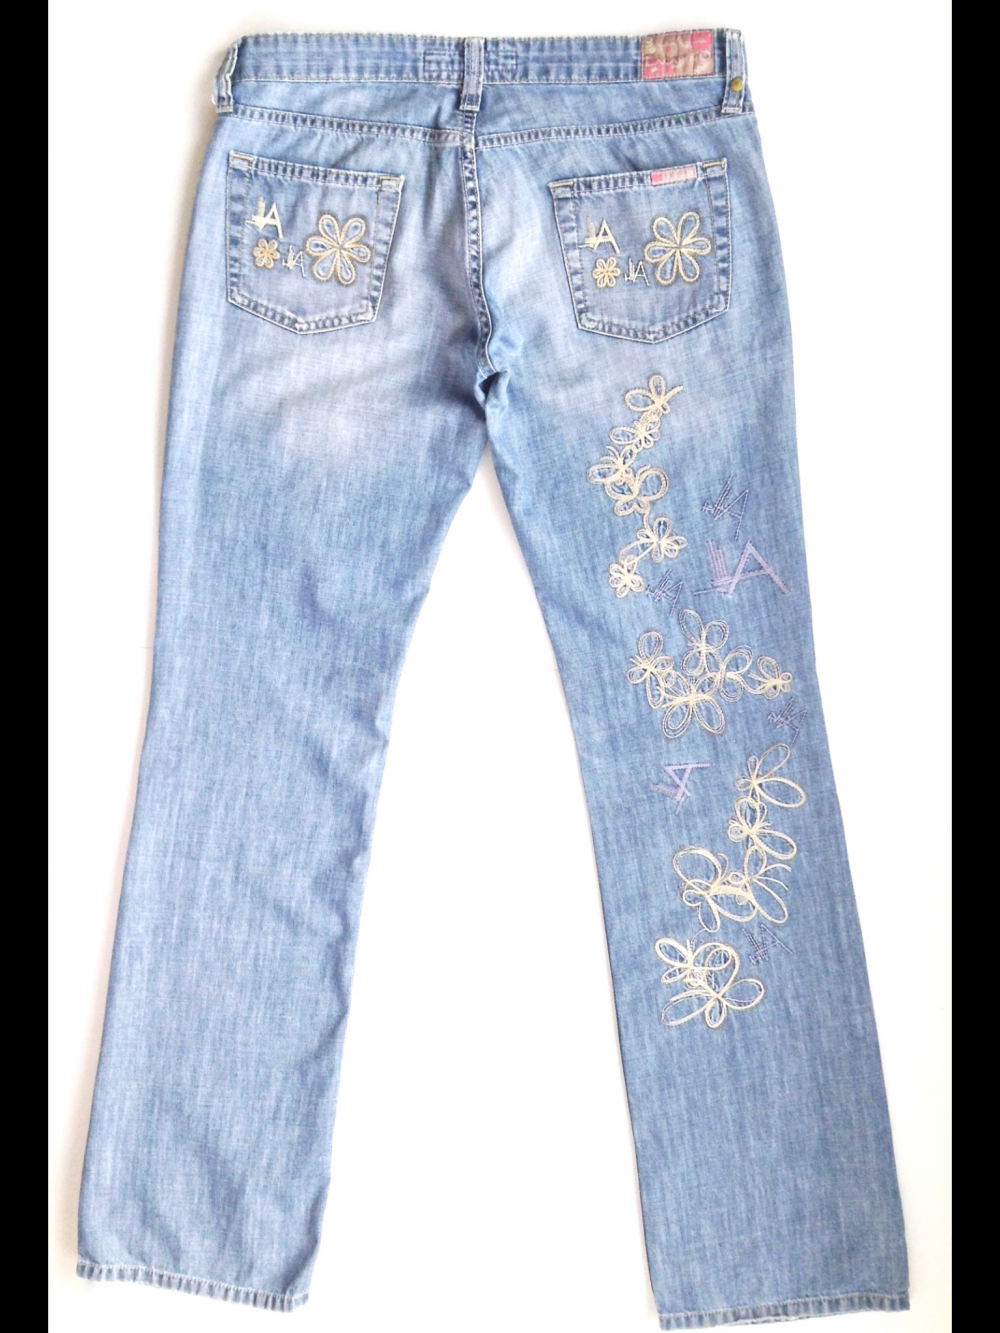 Светлые летние джинсы из хлопка, с вышивкой, прямой крой, на 42-44, Lacarino, Турция